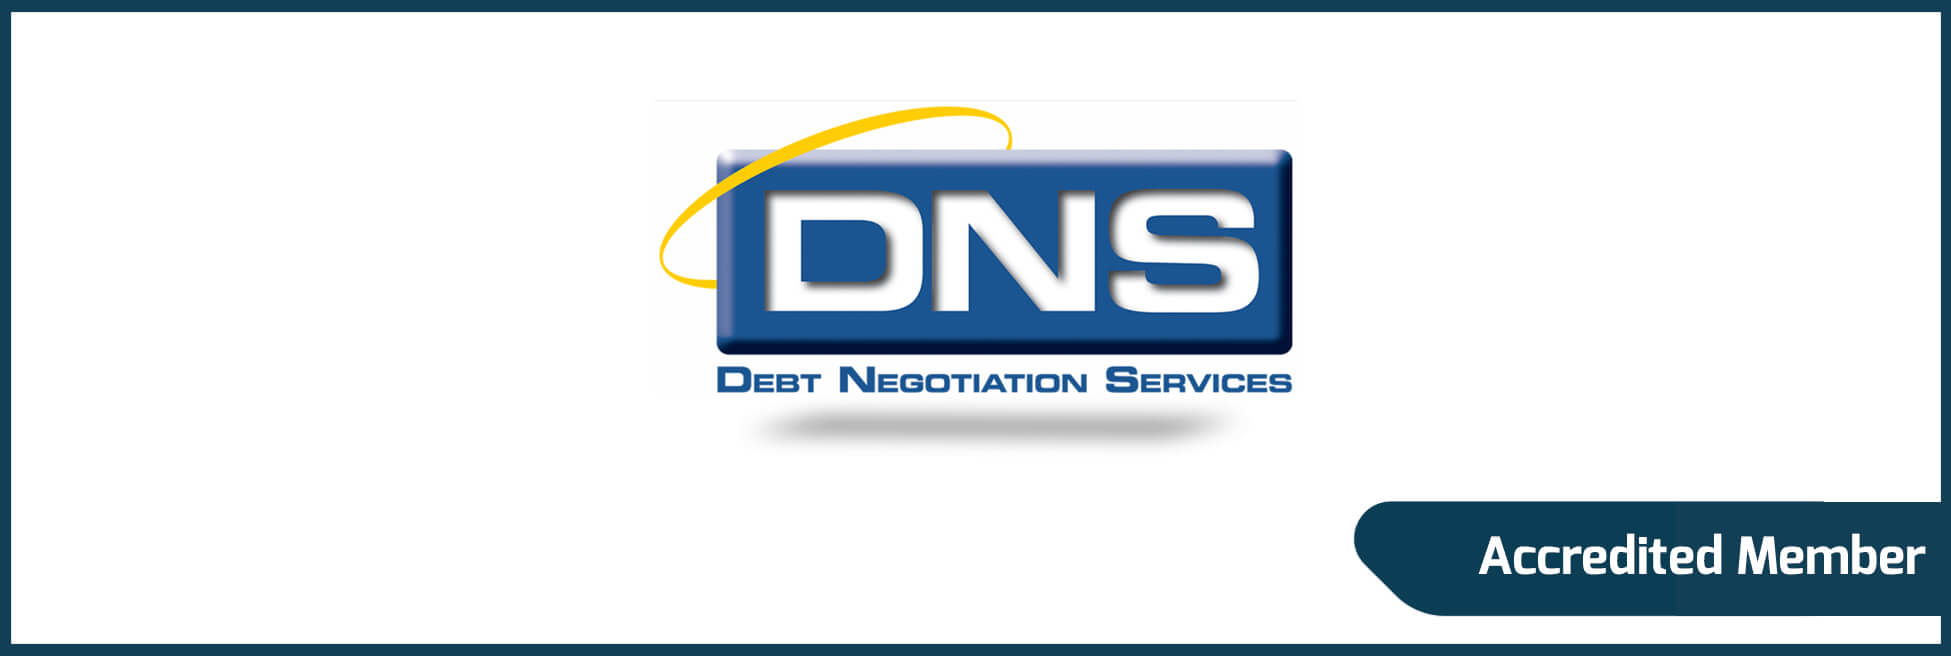 DebtNegotiation Services